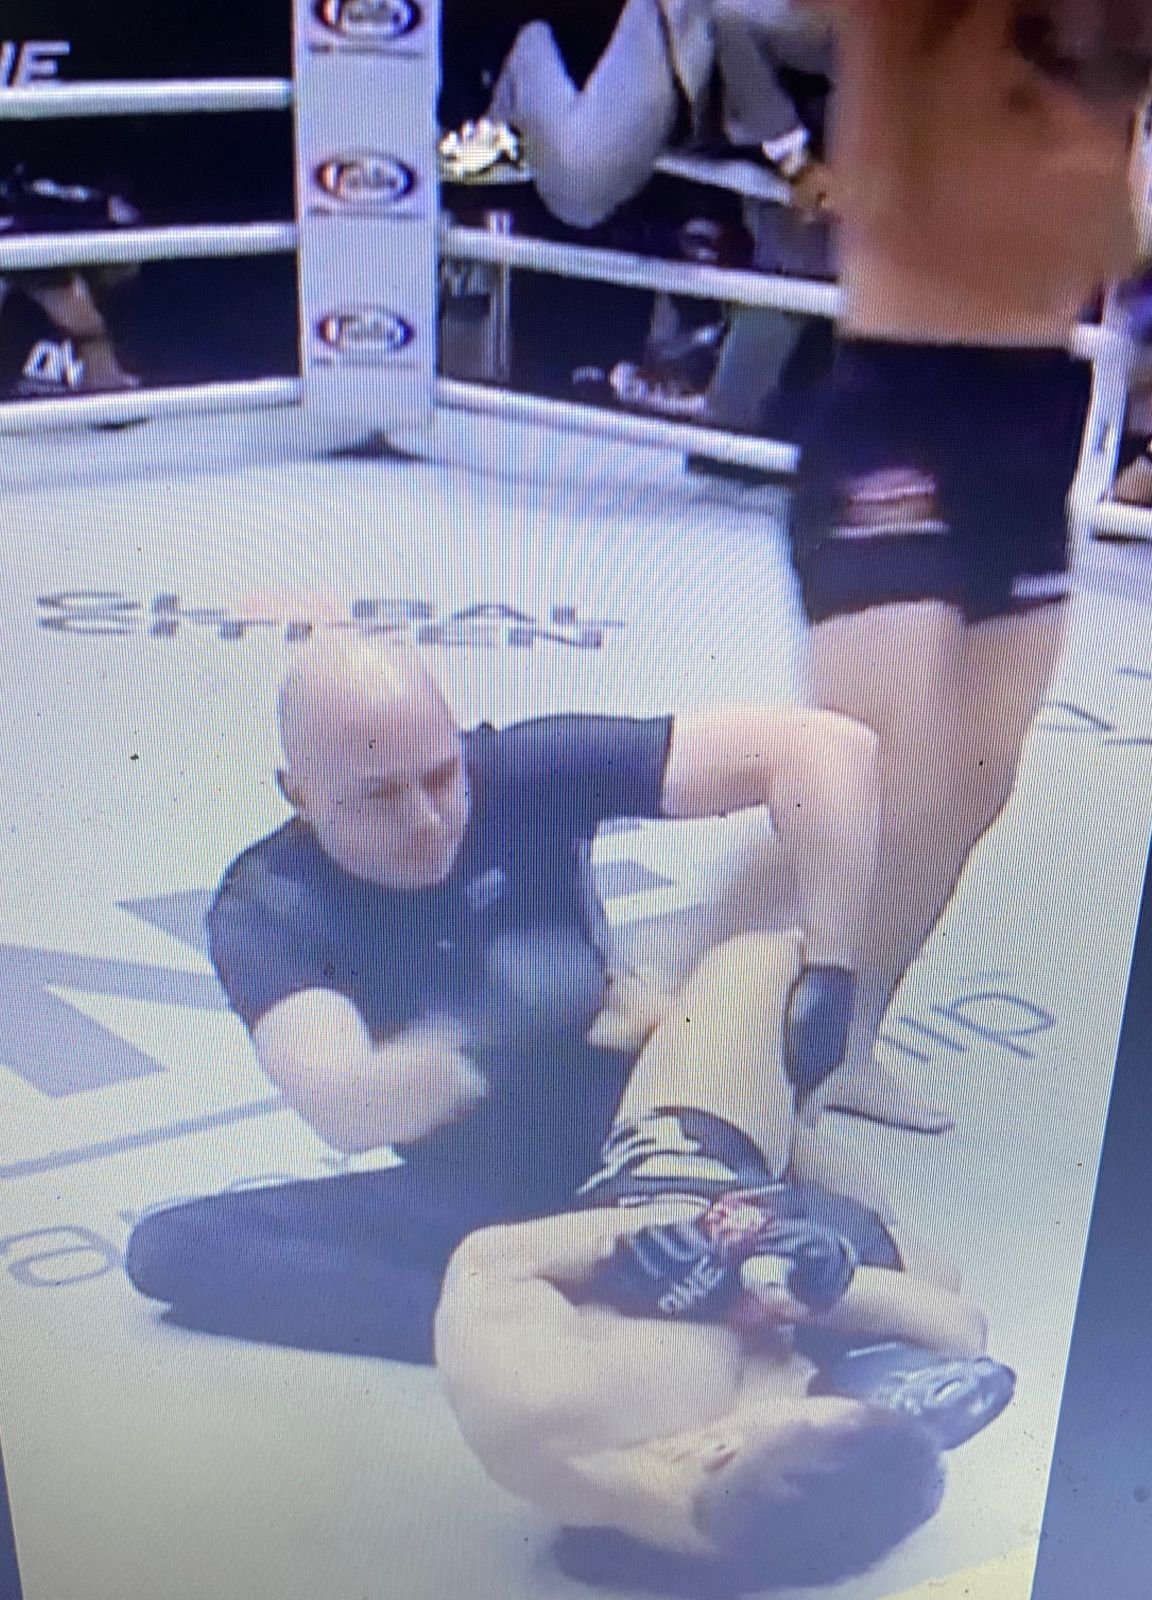 VIDÉO: MMA Fighter perd complètement la tête après avoir été assommé et soumet l'arbitre à une soumission alors que les autorités se précipitent pour intervenir